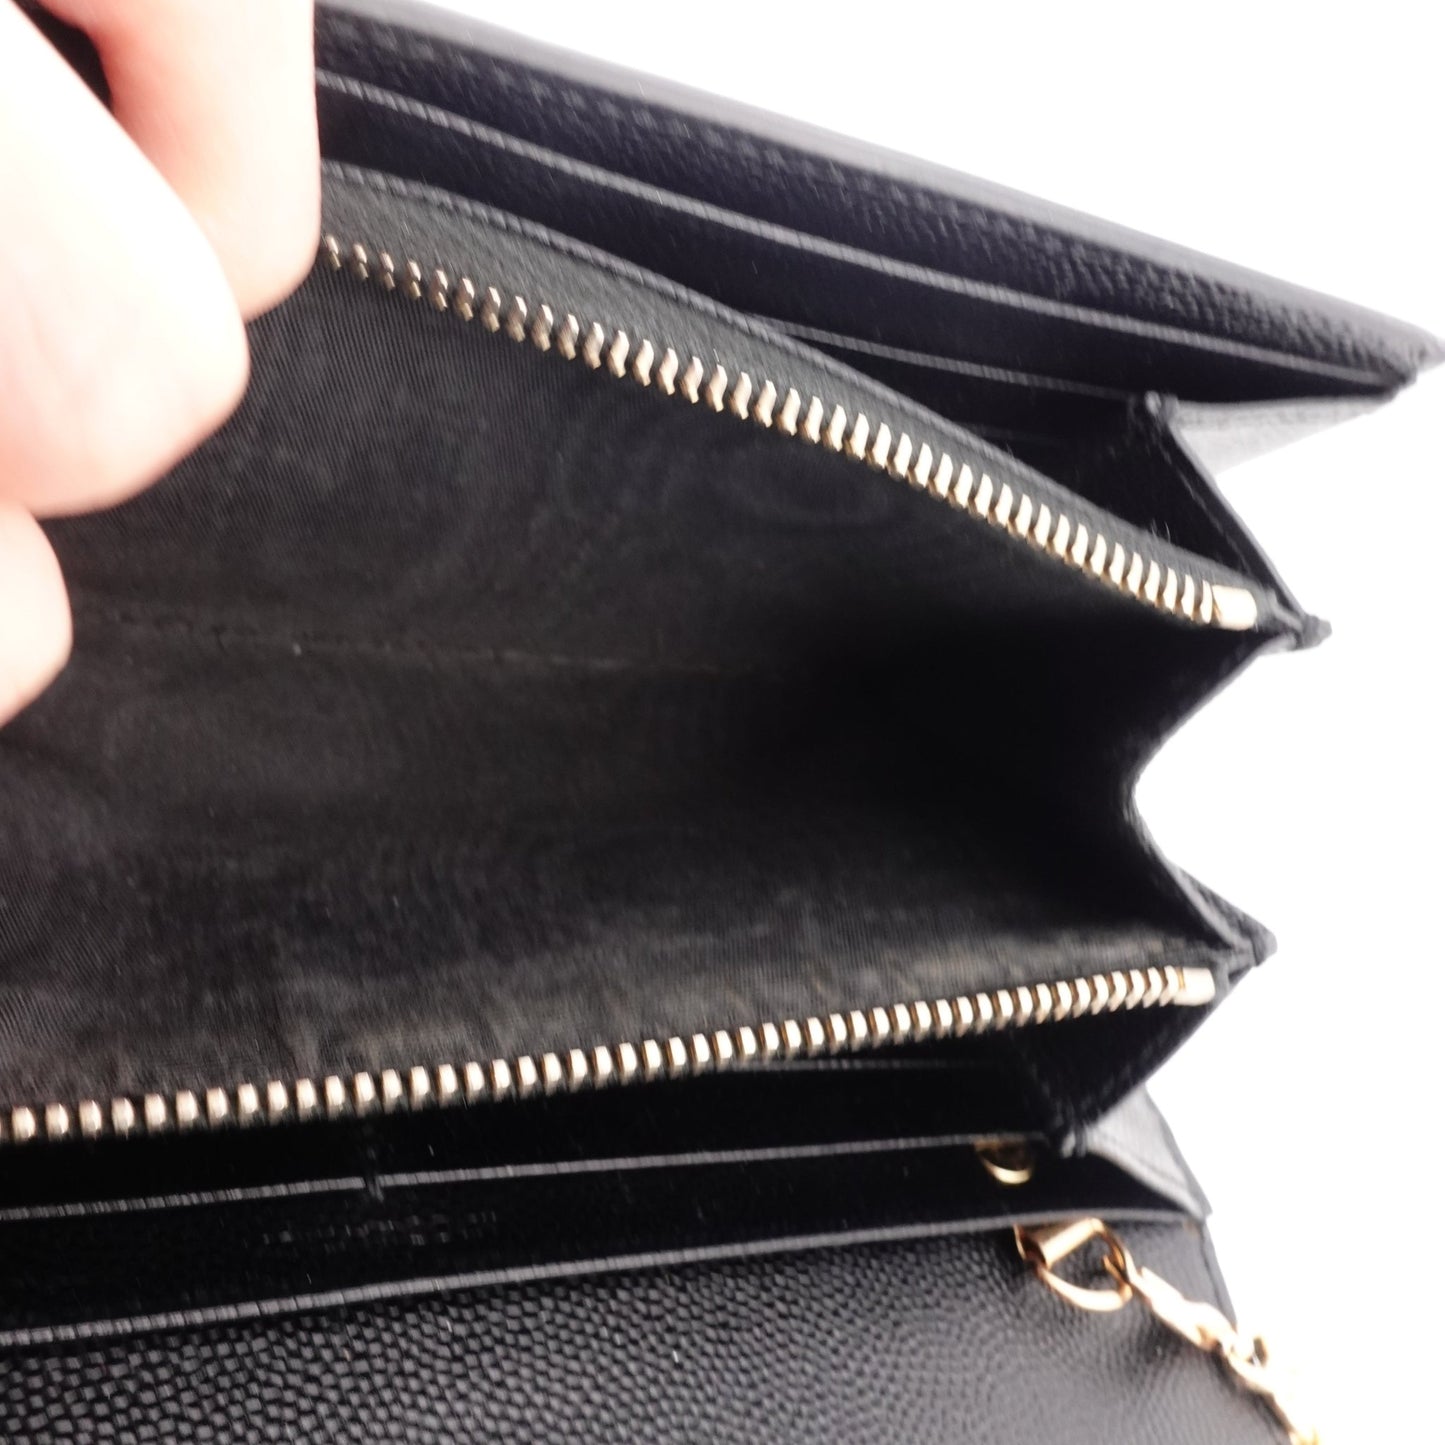 SAINT LAURENT Grain de Poudre Star YSL Wallet on Chain - Bag Envy